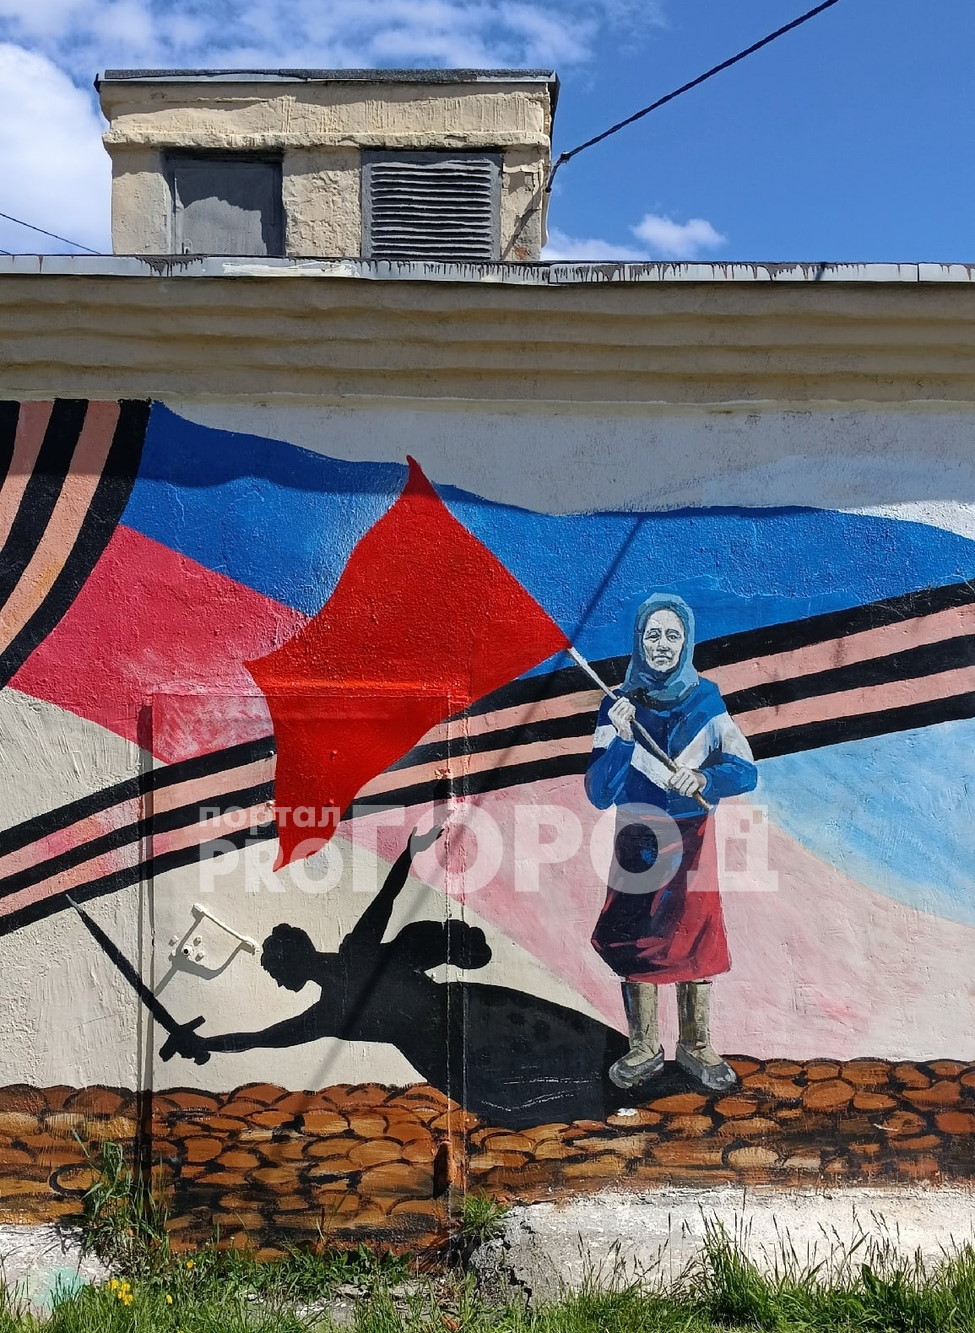 В Чебоксарах восстановили граффити с Красным знаменем и разыскивают вандалов